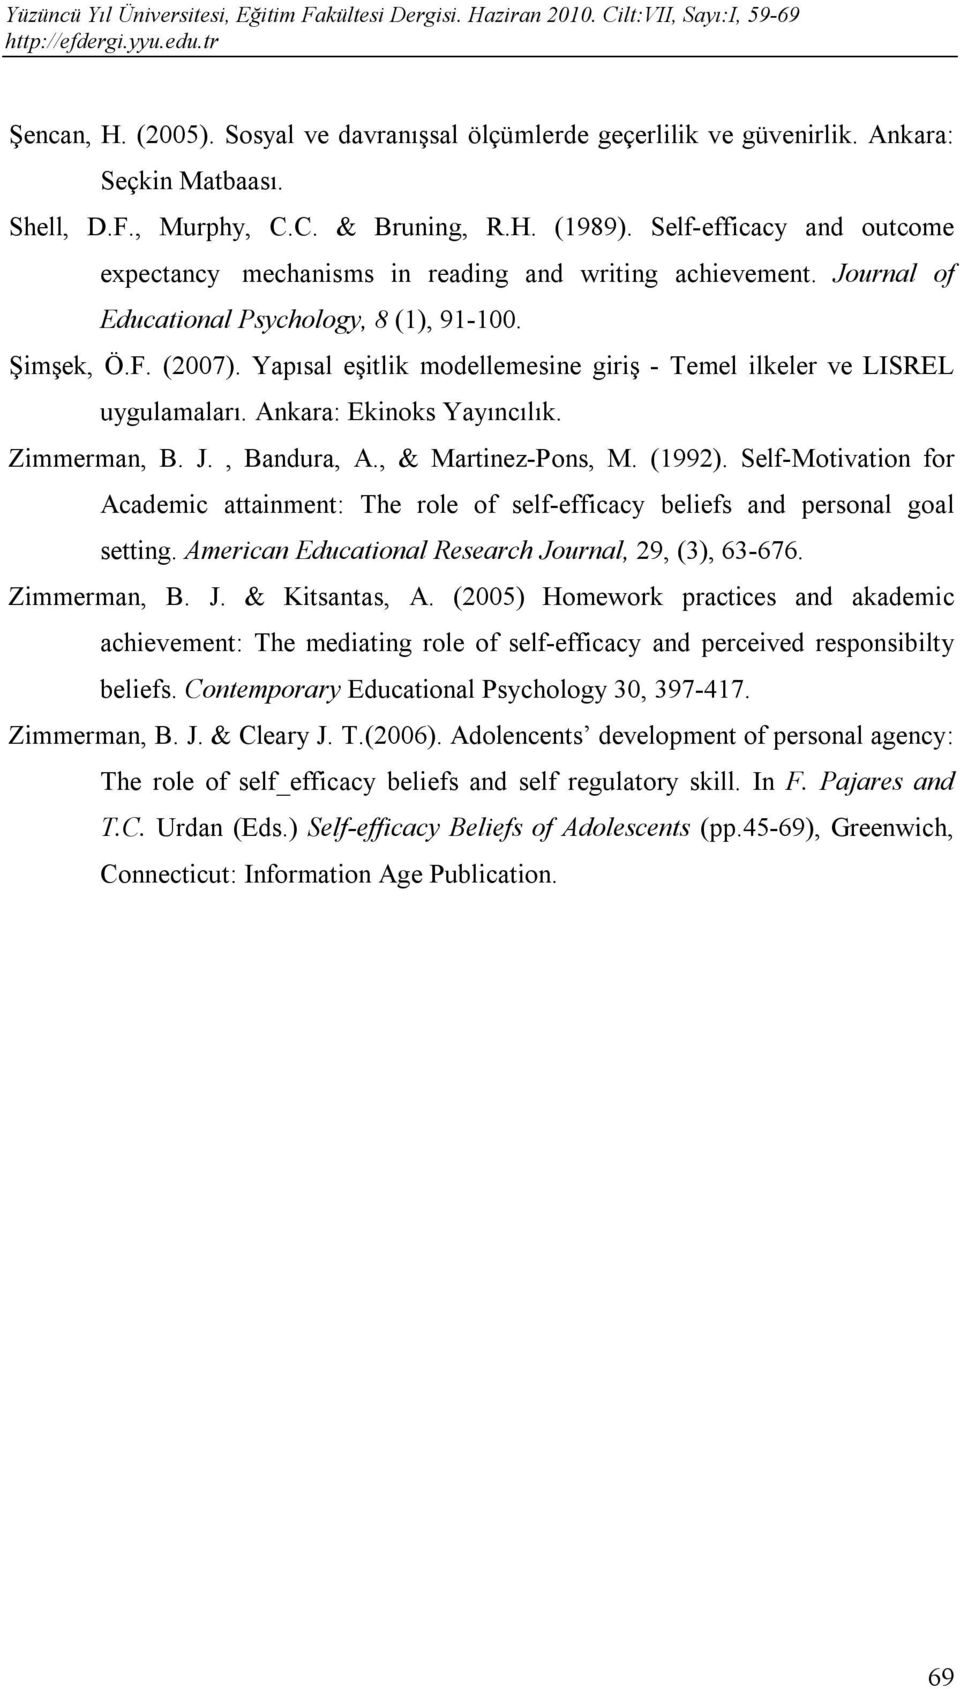 Yapısal eşitlik modellemesine giriş - Temel ilkeler ve LISREL uygulamaları. Ankara: Ekinoks Yayıncılık. Zimmerman, B. J., Bandura, A., & Martinez-Pons, M. (1992).